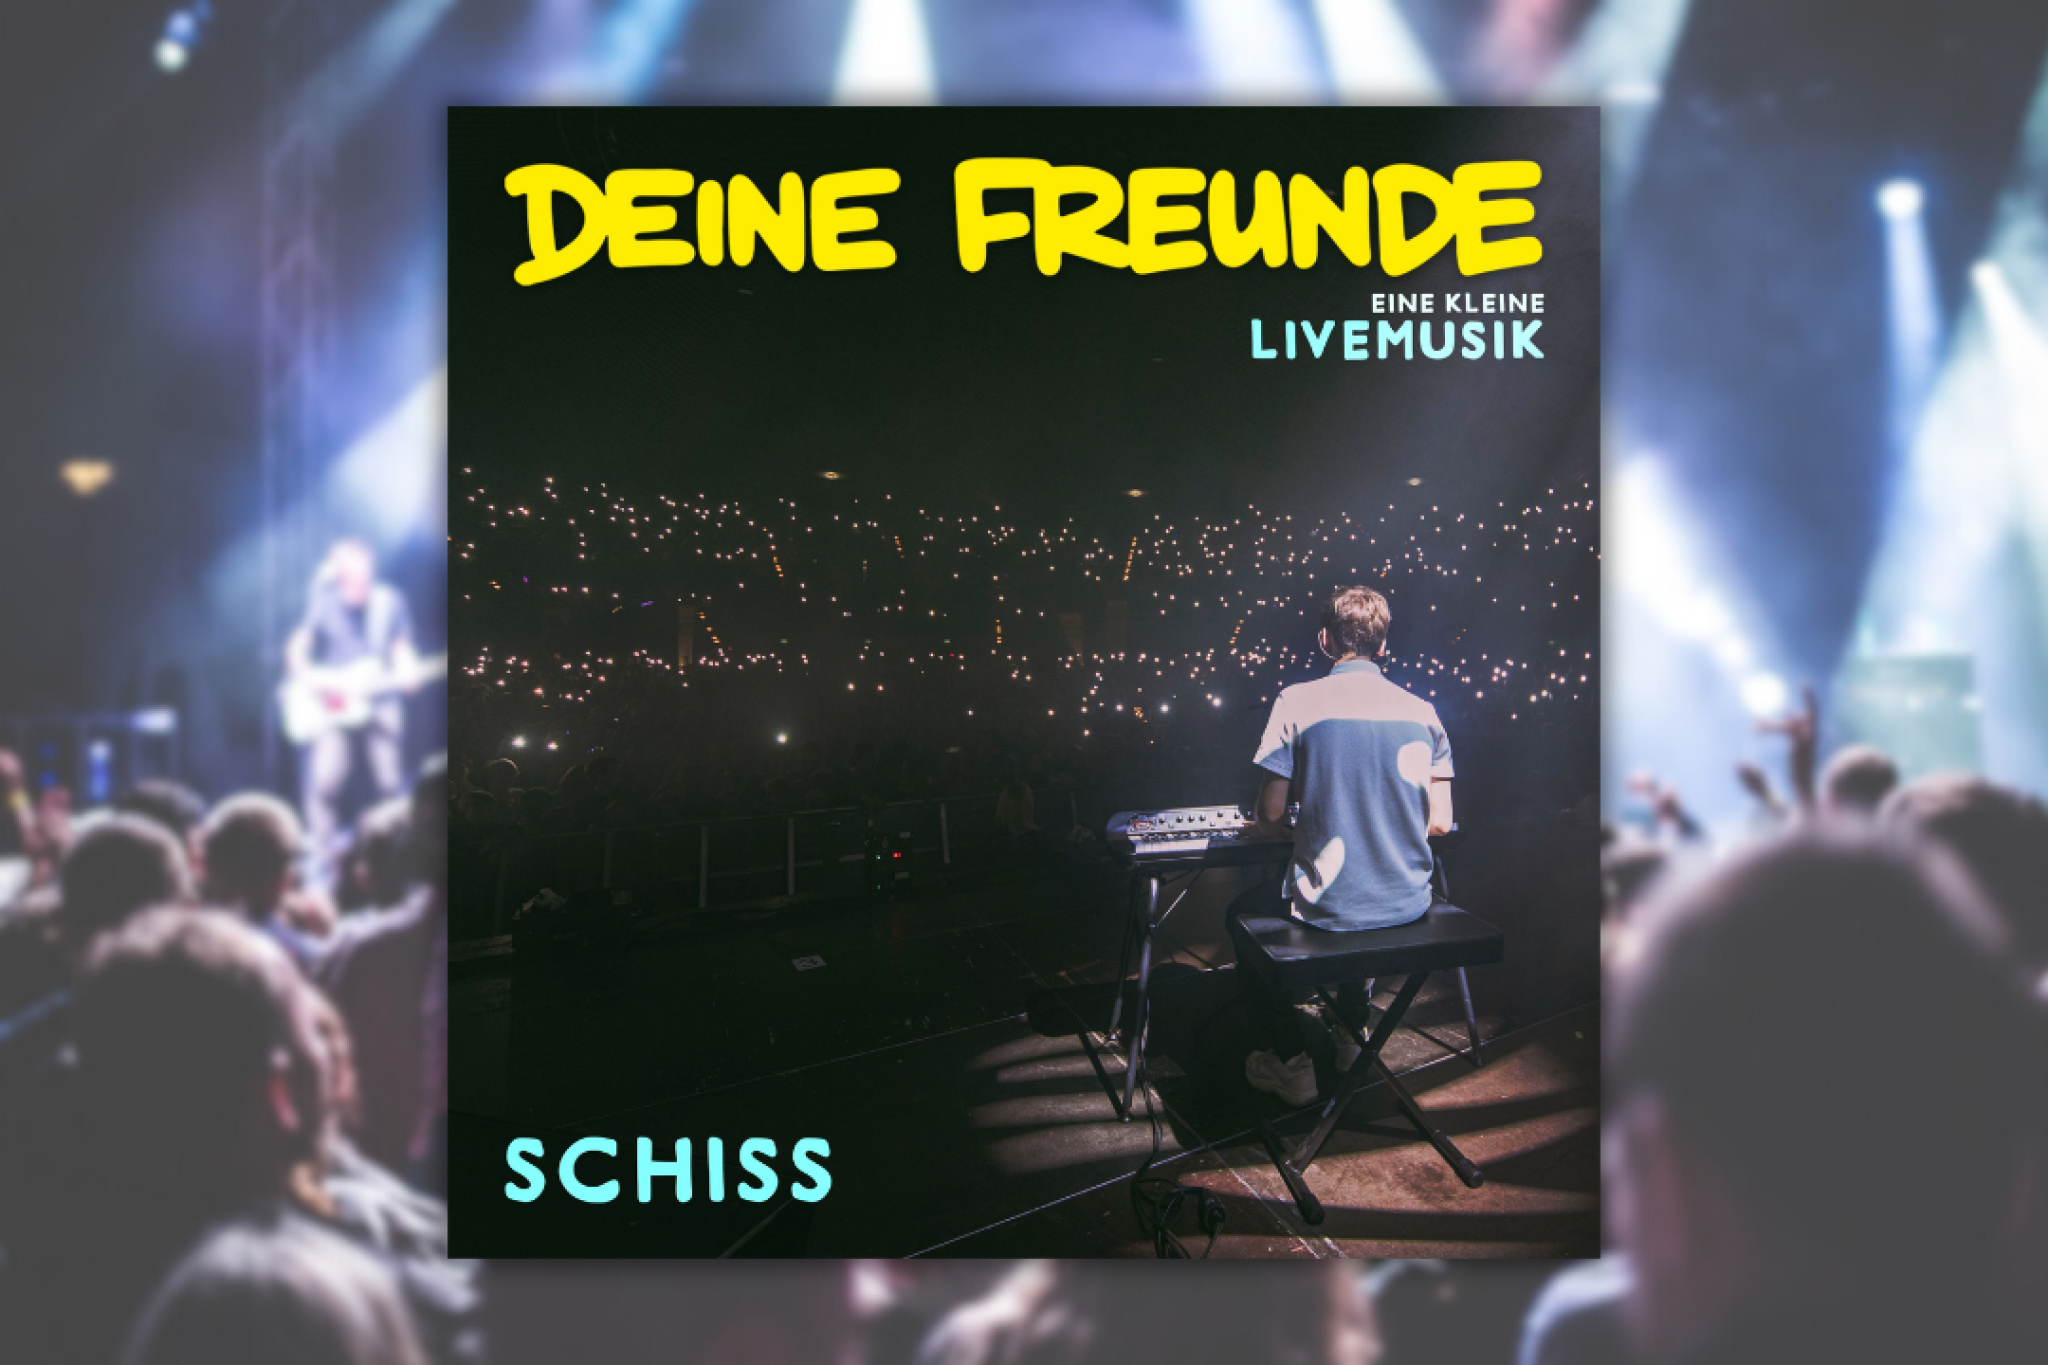 Die neue Live-Single "Schiss" von Deine Freunde!